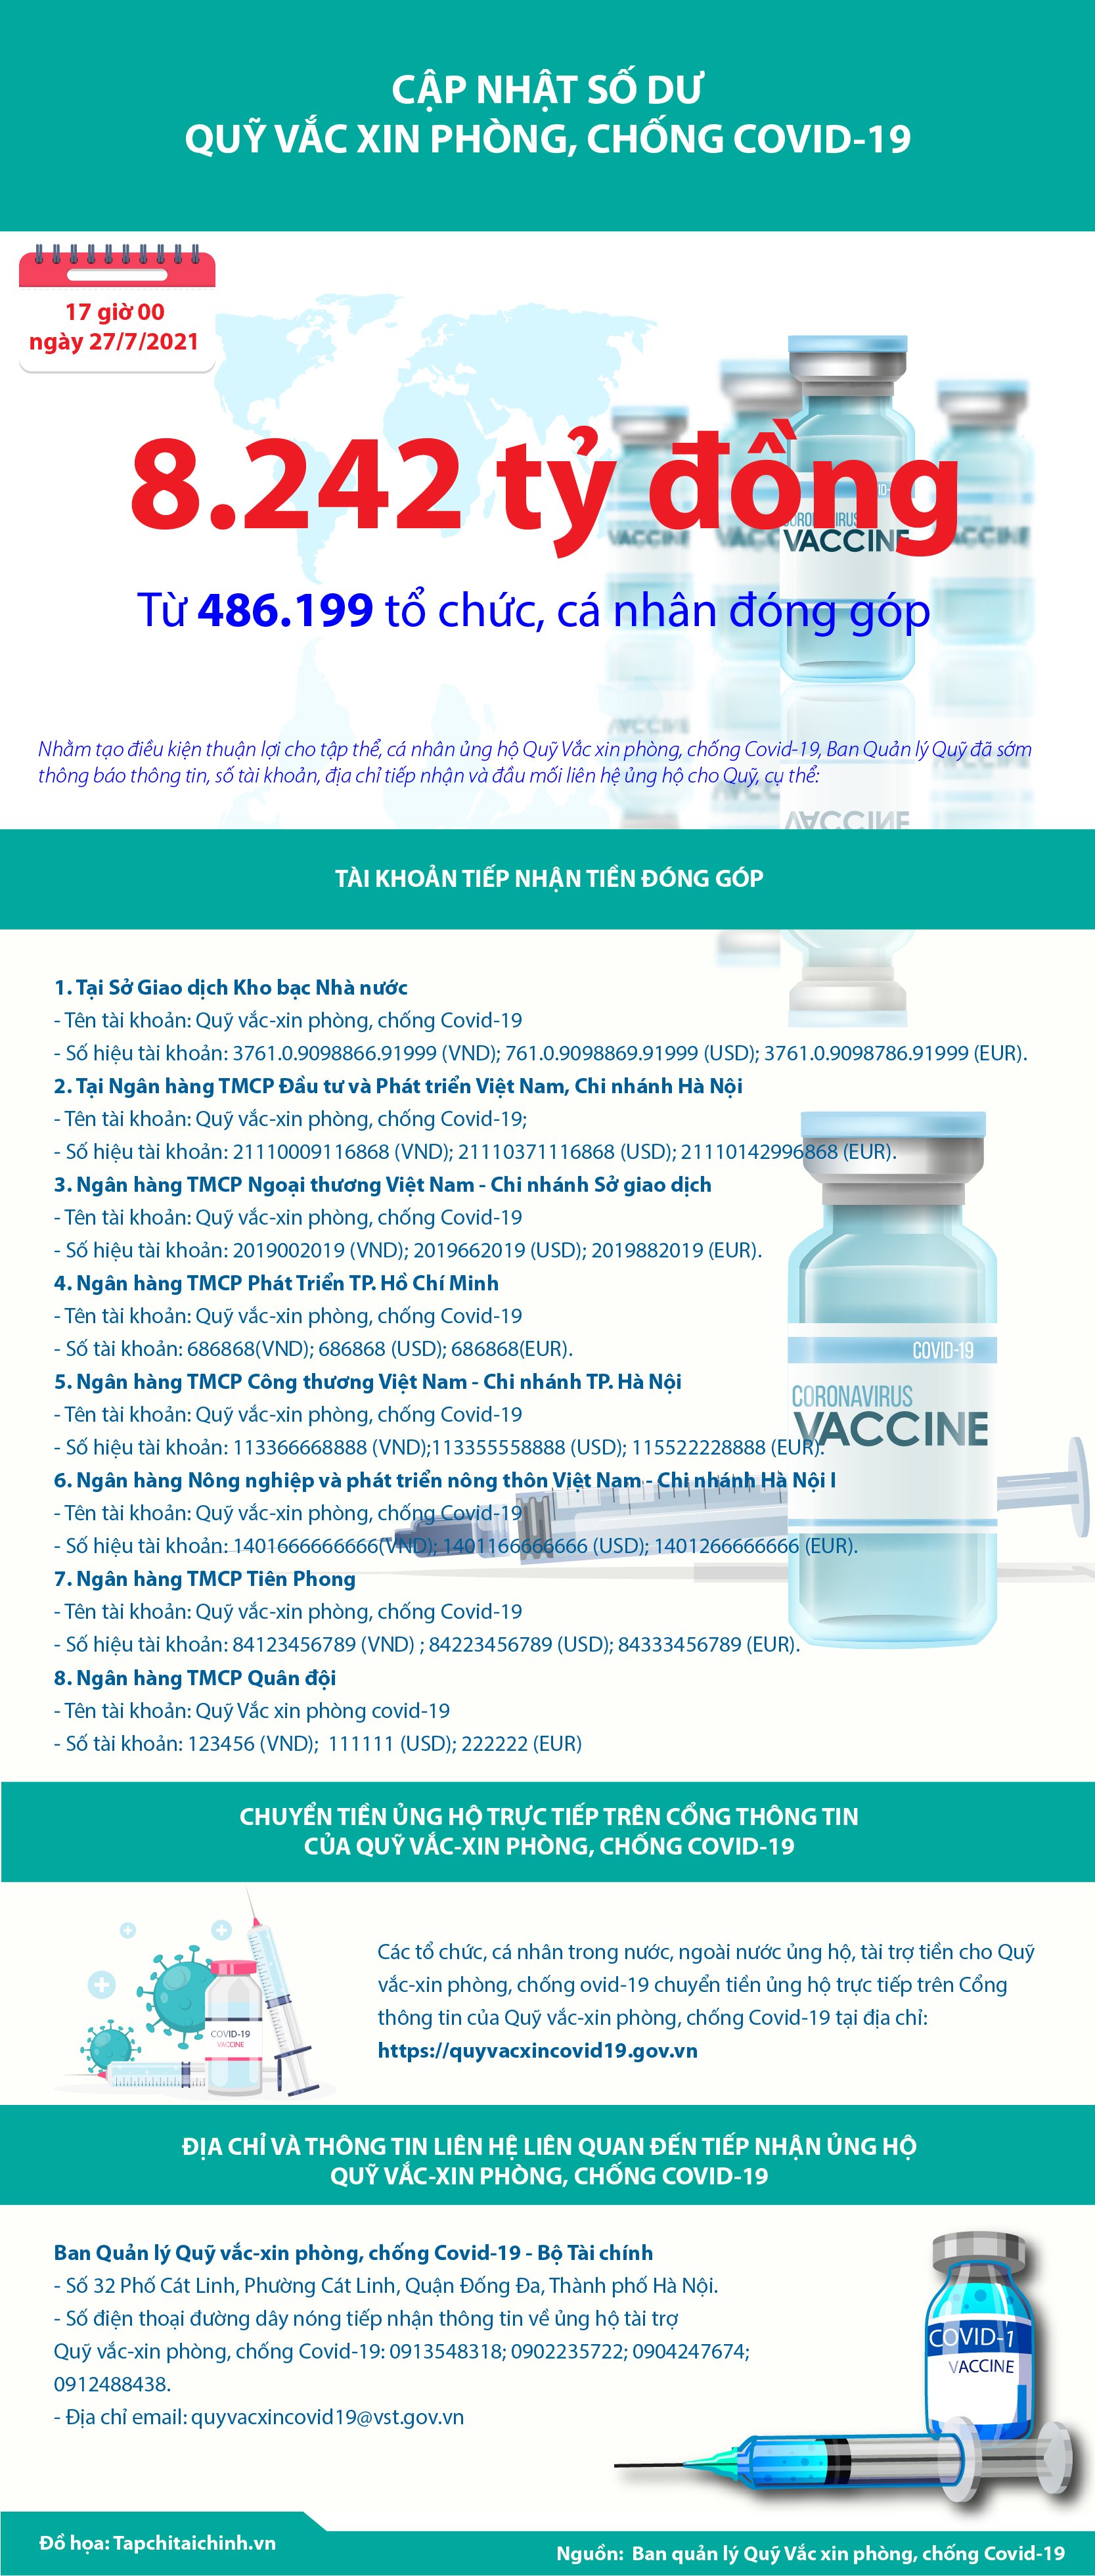 [Infographics] Quỹ Vắc xin phòng, chống Covid-19 đã tiếp nhận ủng hộ 8.242 tỷ đồng - Ảnh 1